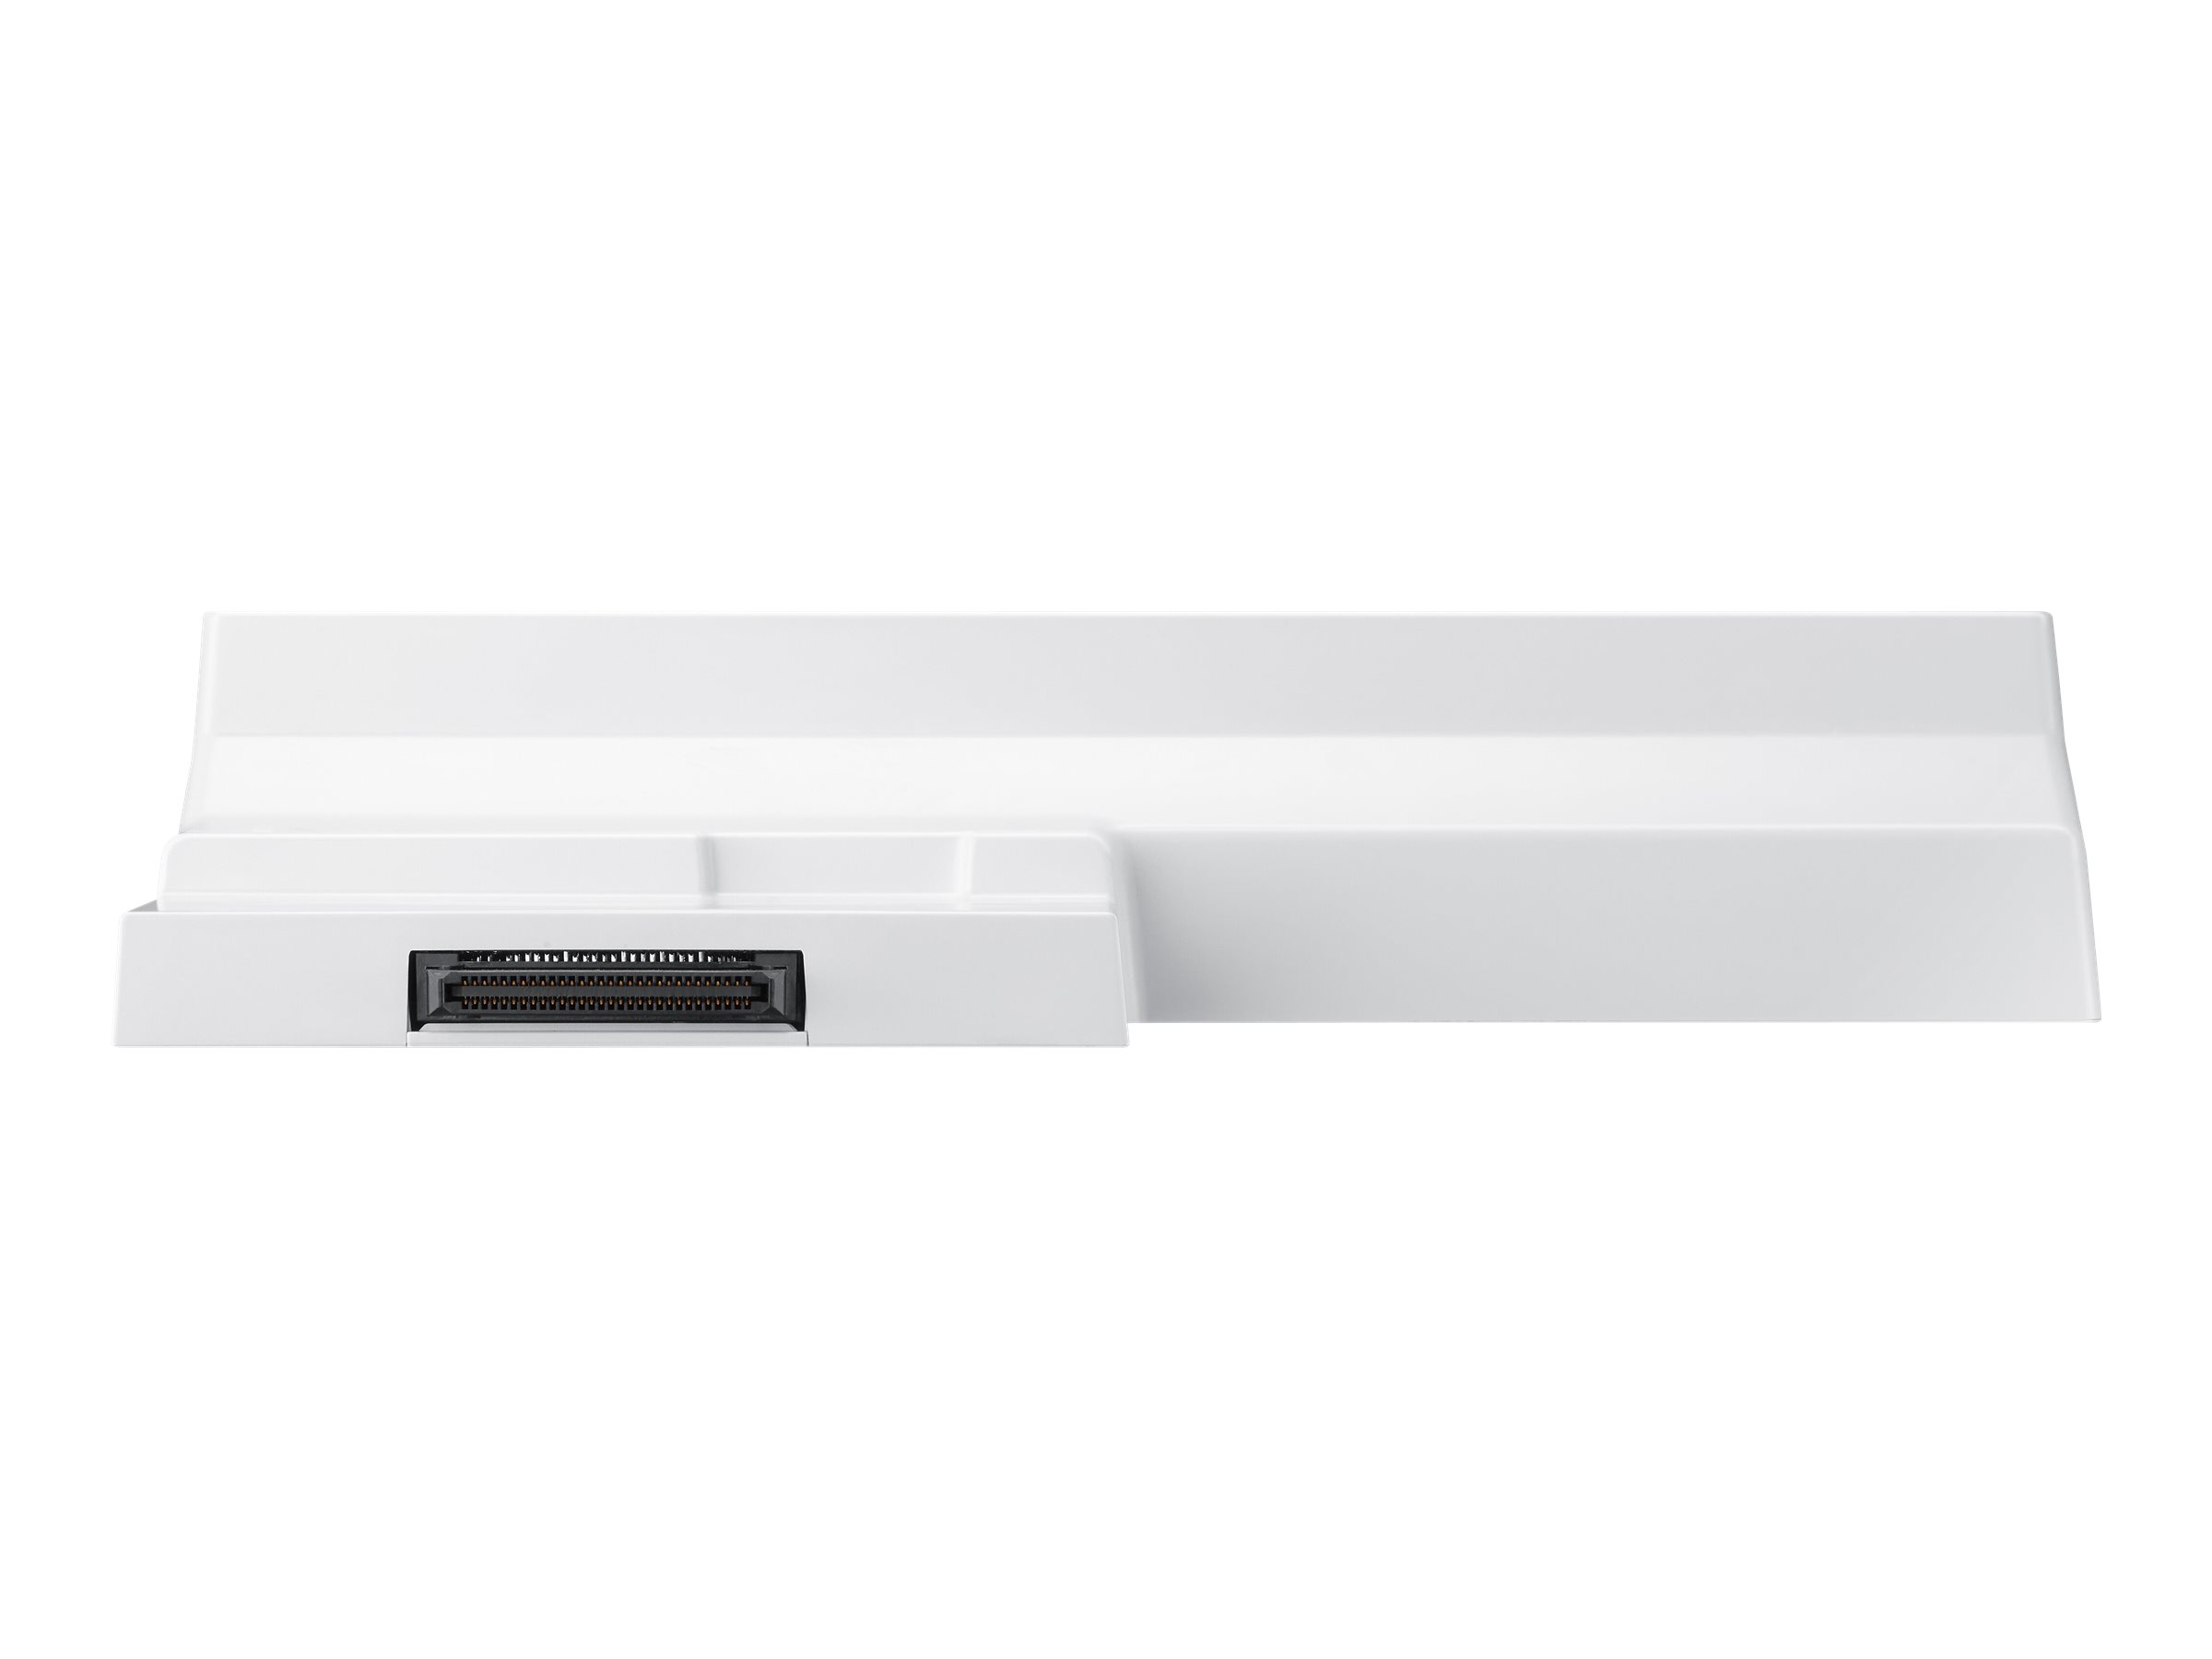 Samsung Anschlussbox für LCD-Display - Grau-Weiß